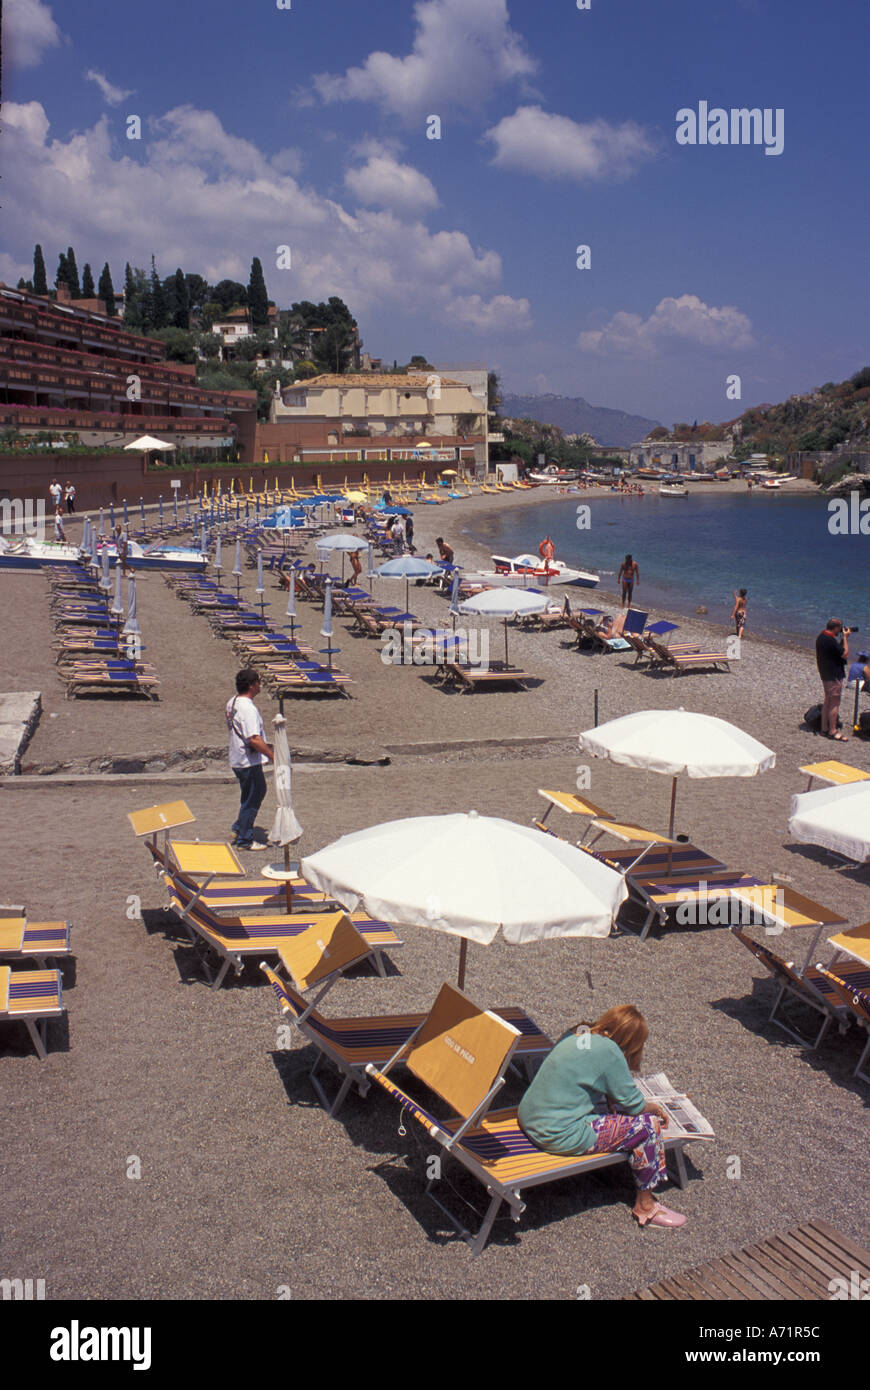 Italy, Sicily, Taormina. Mazzaro Beach. Stock Photo